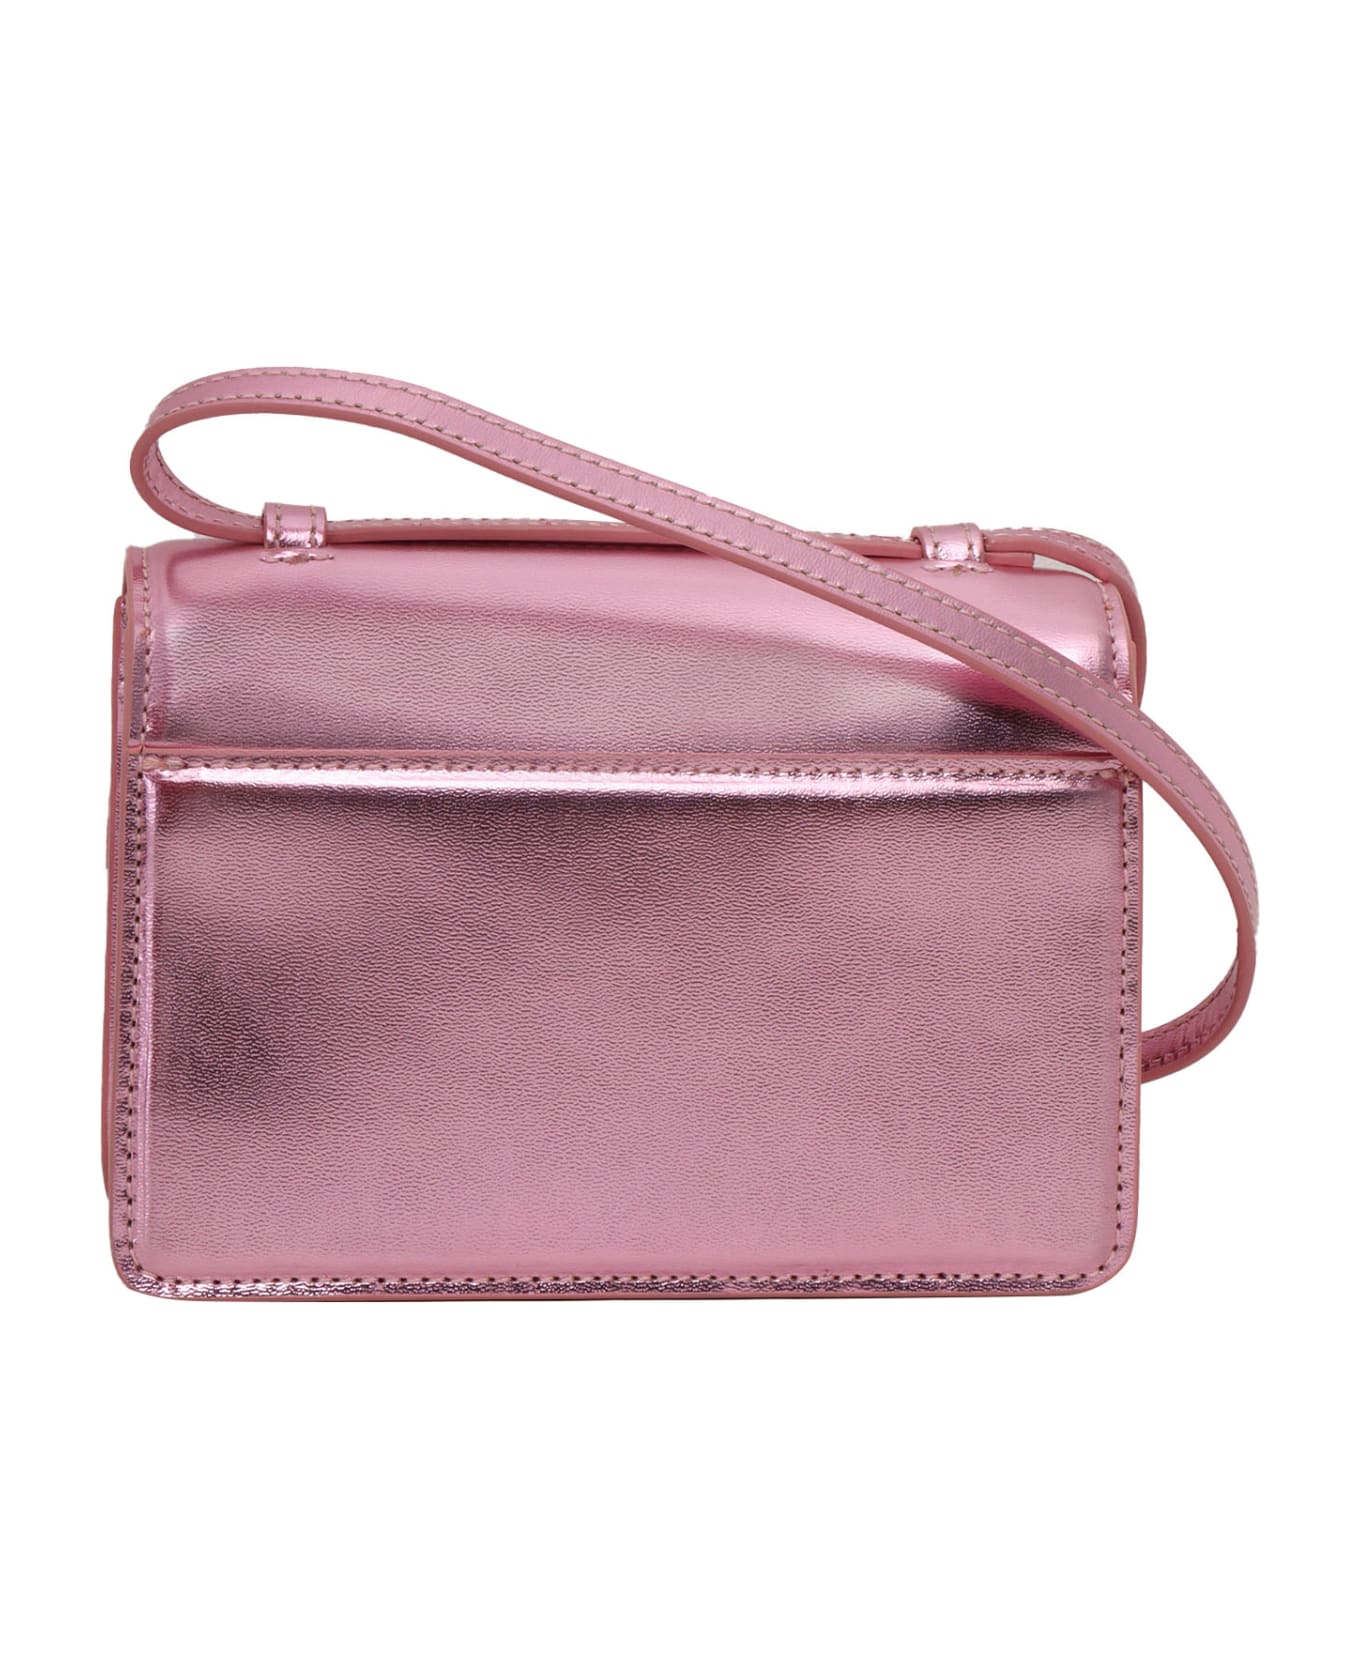 Versace Pink Metallic Bag - PINK